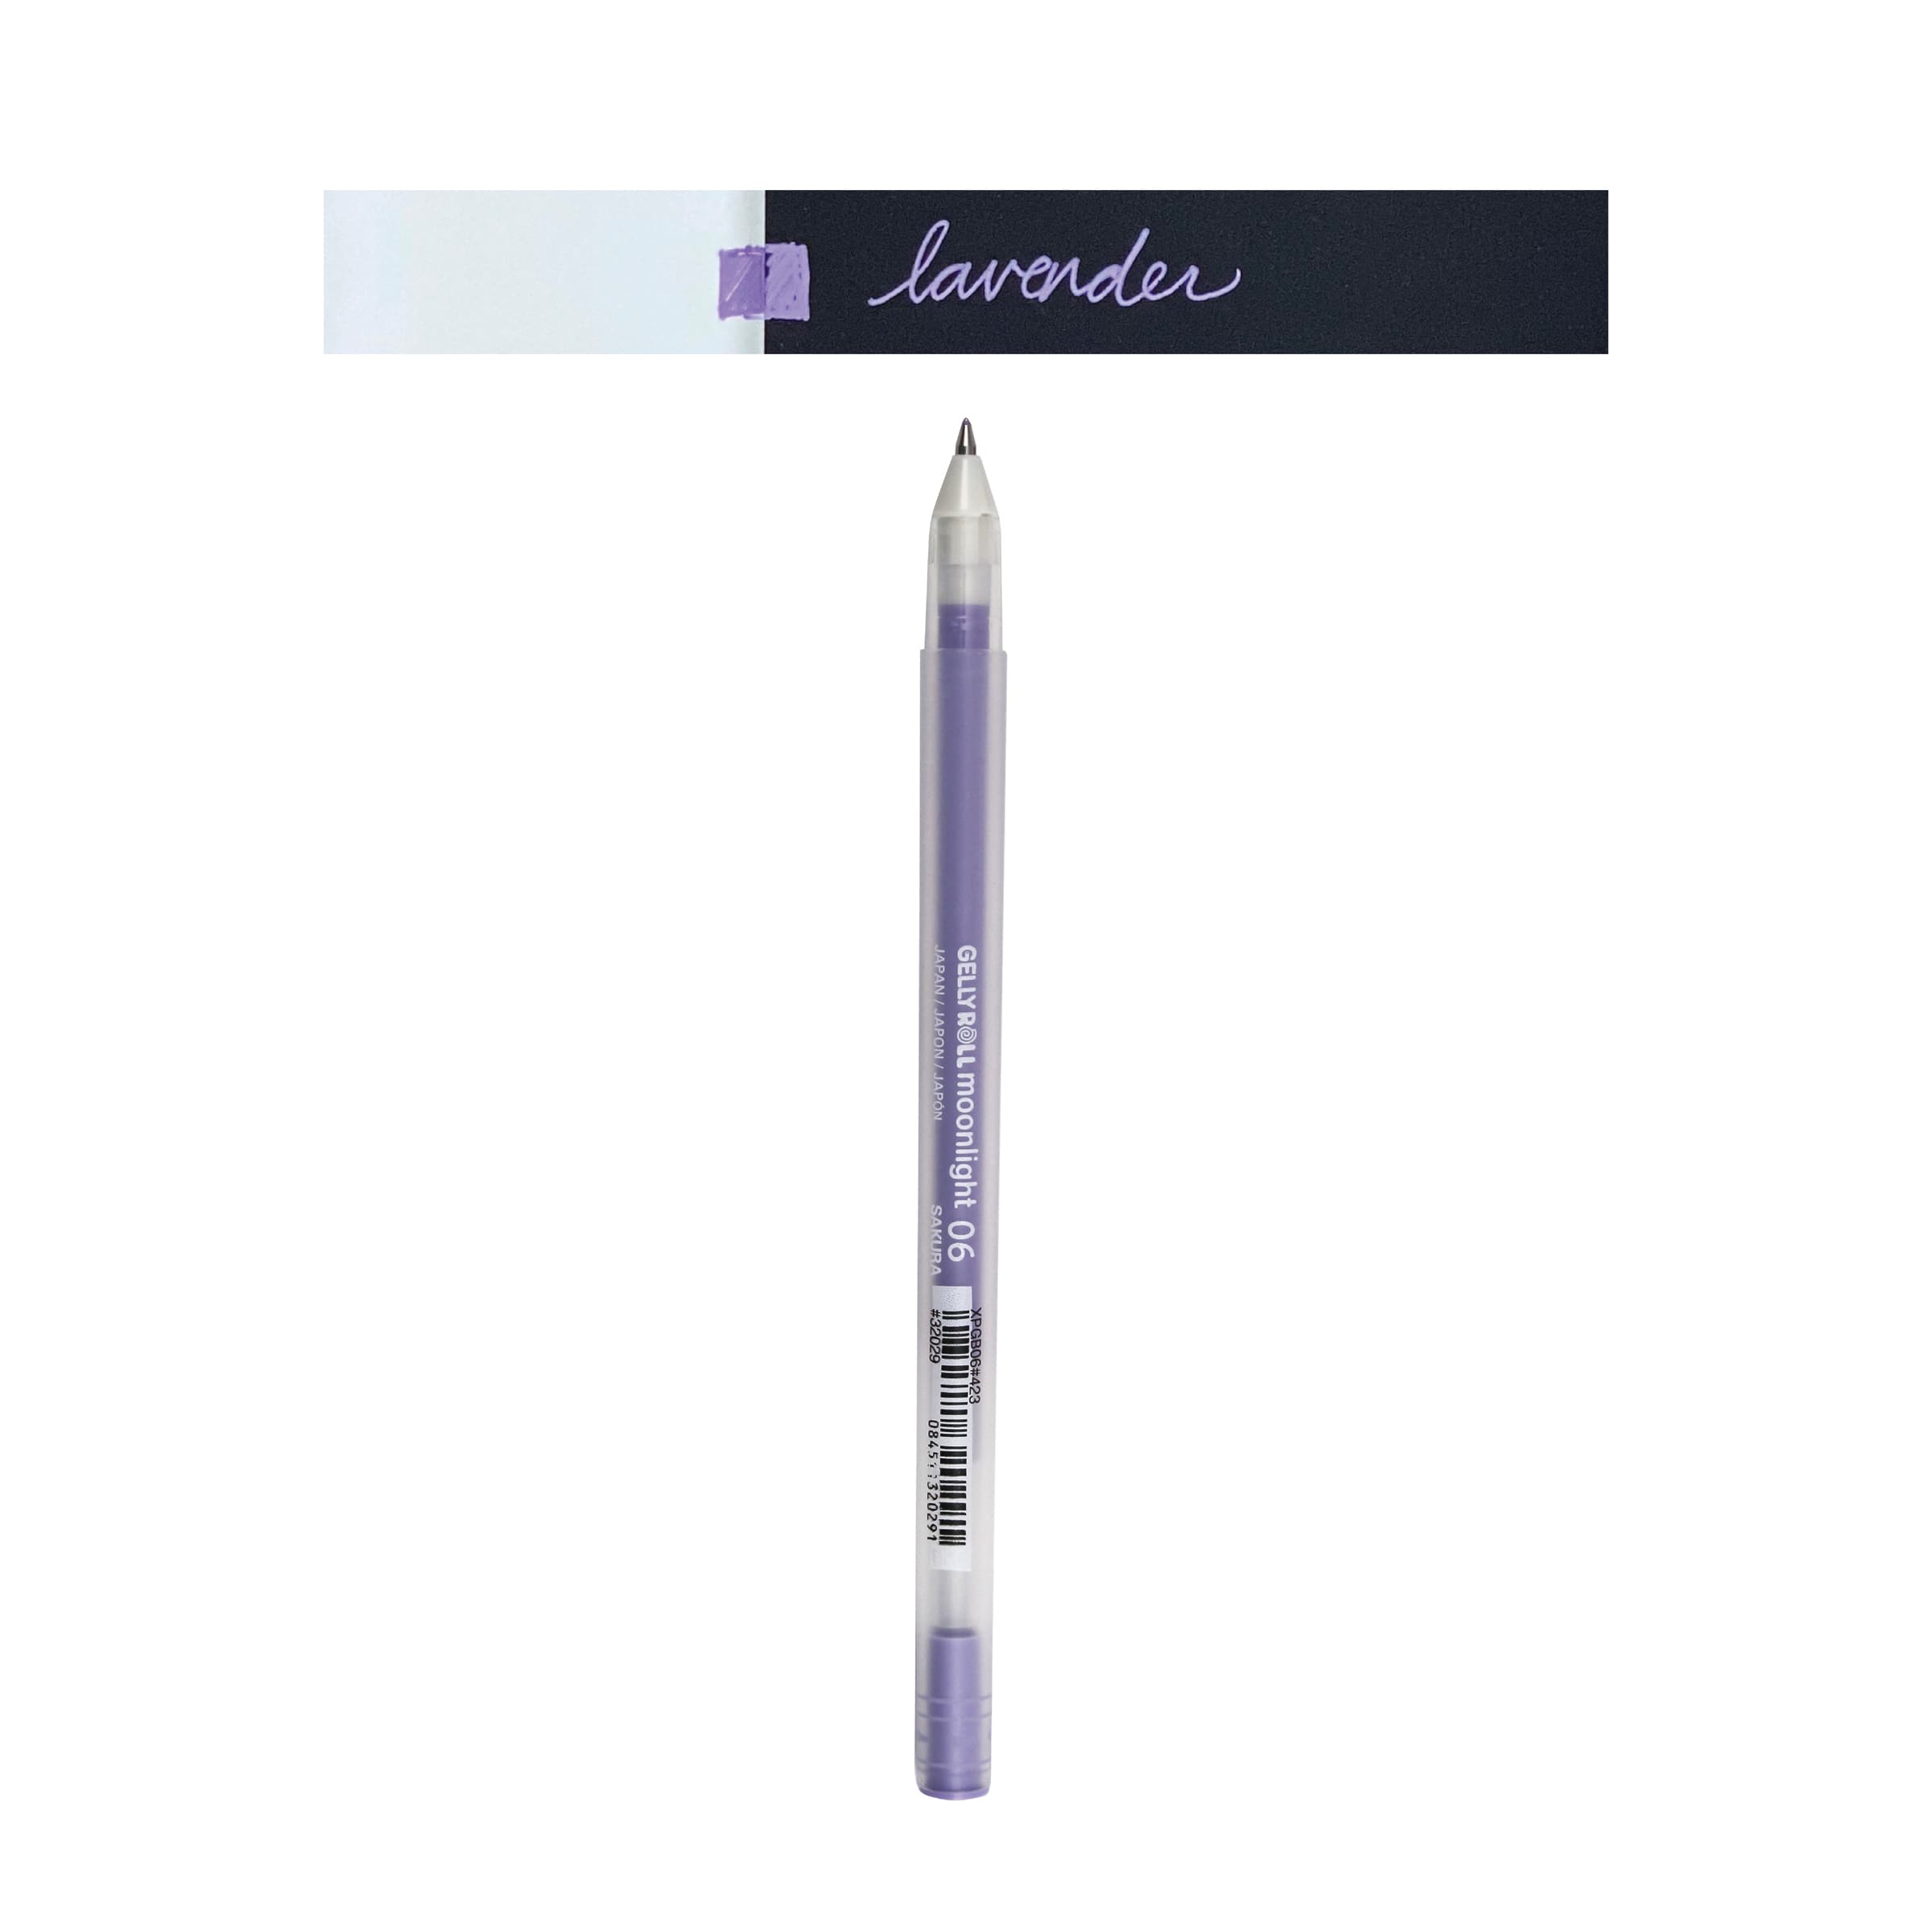 Gelly Roll Moonlight 06 Pen Lavender